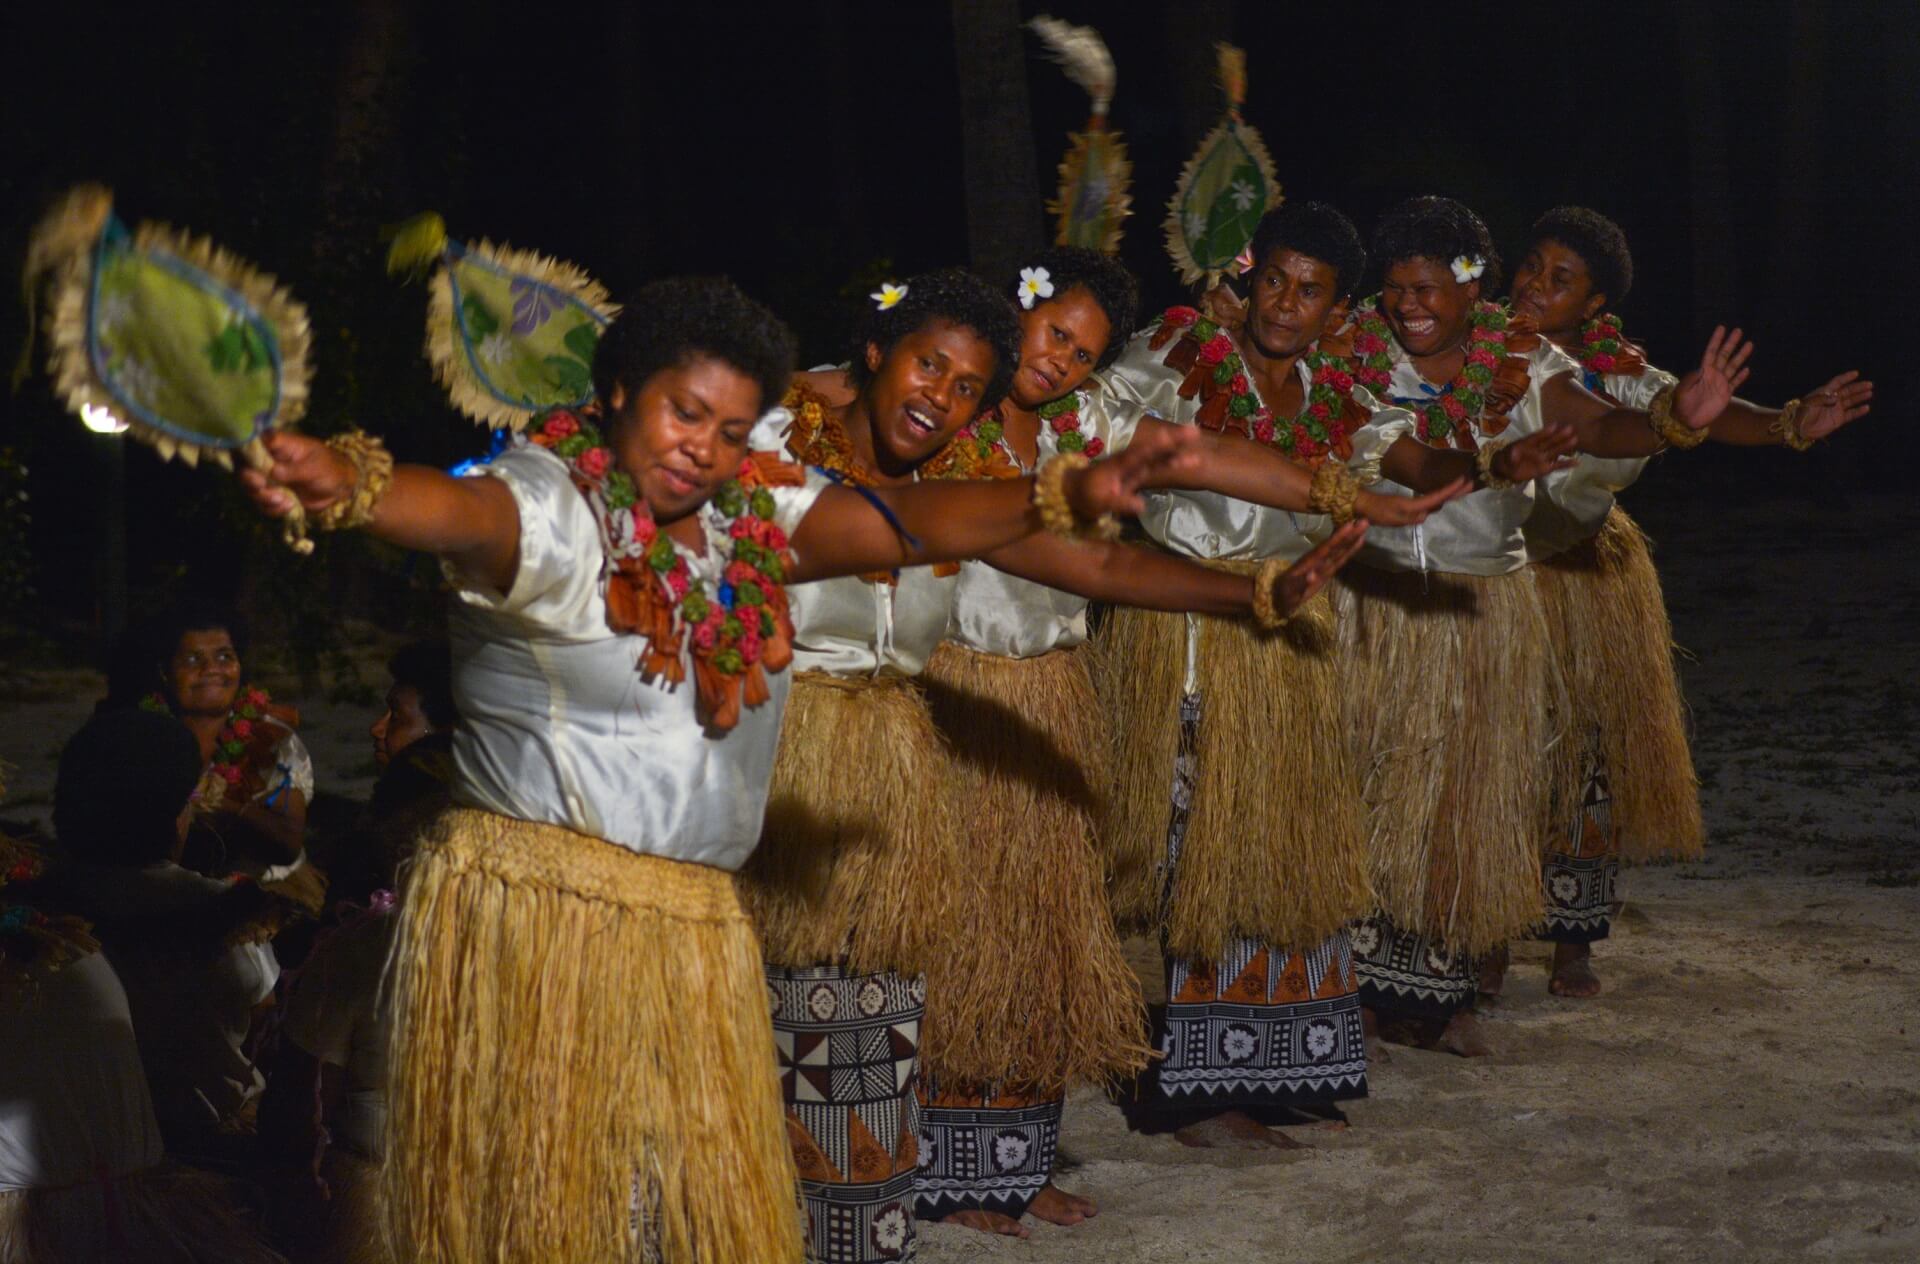 Frauen führen den Meke Tanz auf, ein traditioneller Tanz auf den Fidschi Inseln